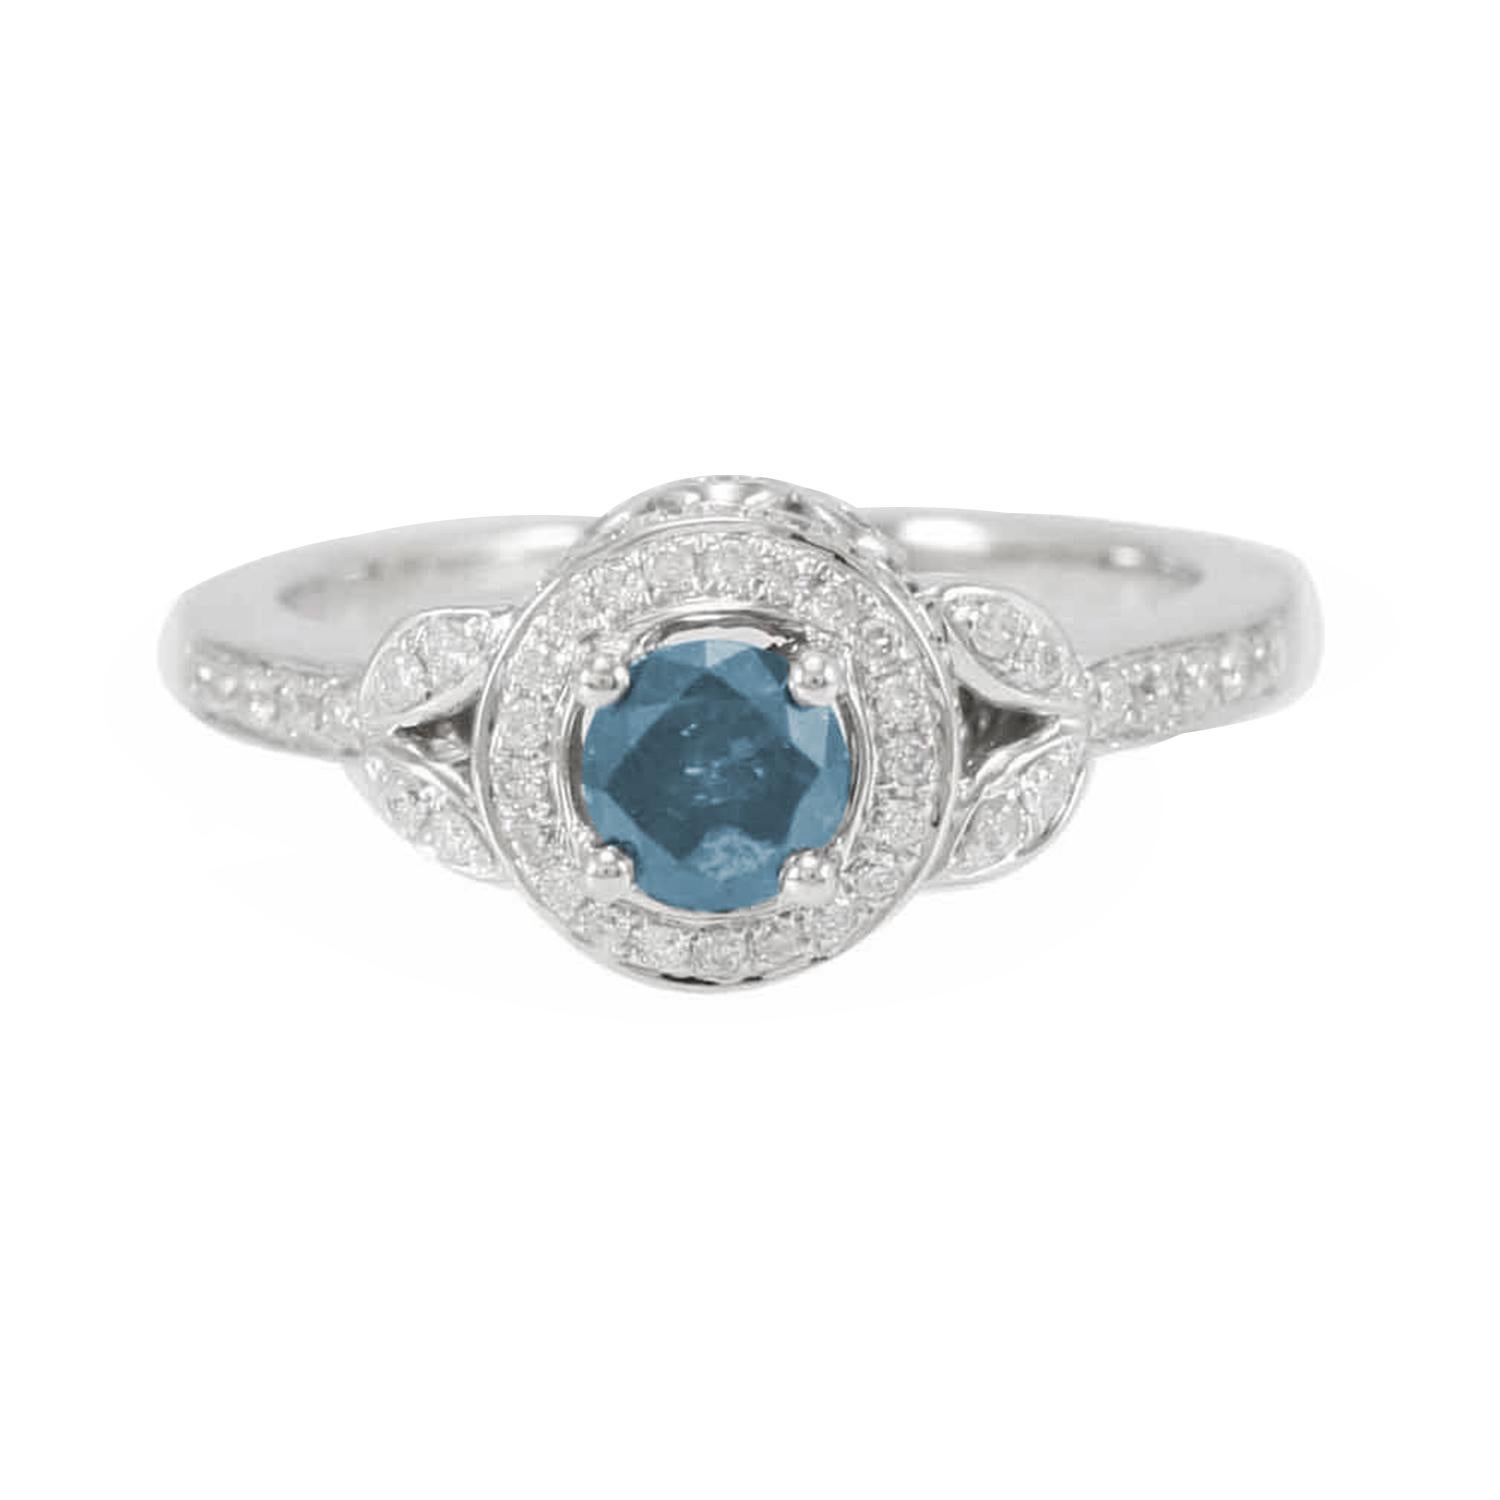 Cette superbe bague de la collection Suzy Levian Limited Edition présente une magnifique pierre centrale en diamant bleu de fantaisie (.36ct), de forme ronde, avec un ensemble de diamants blancs (.41cttw), le tout serti dans une monture en or blanc